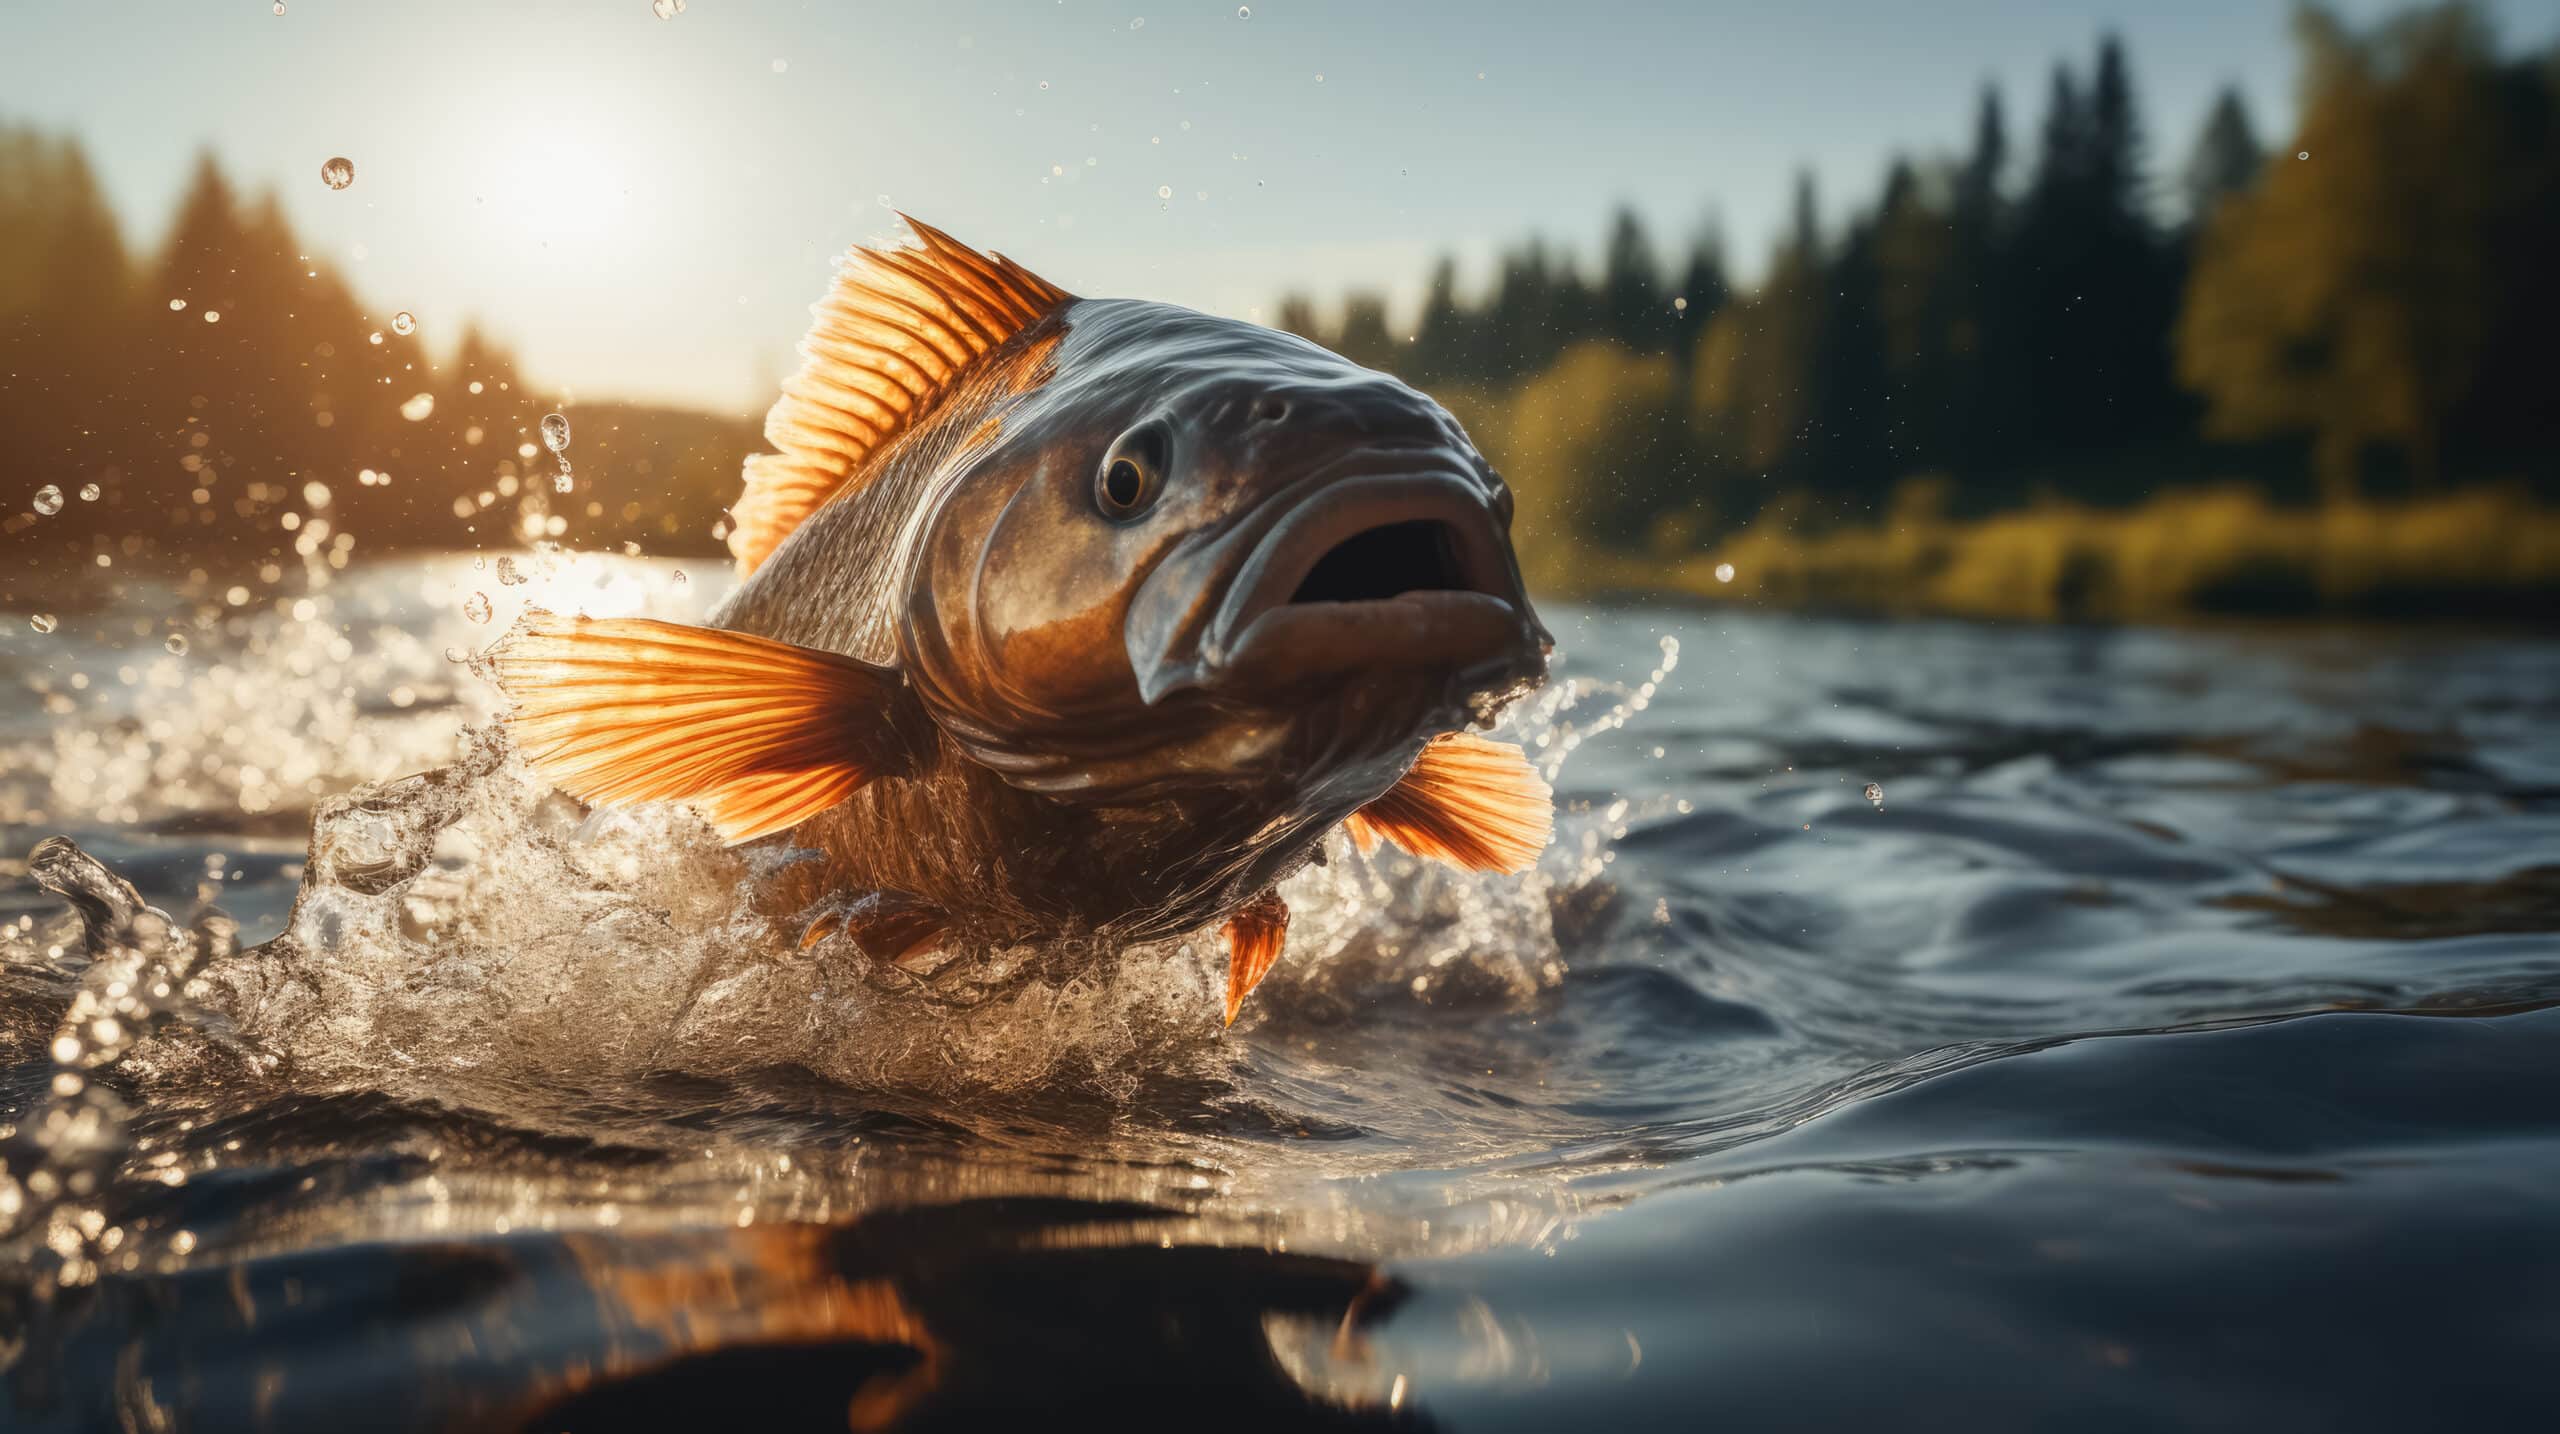 fanatic4fishing.com : How do you catch big fish in a lake?